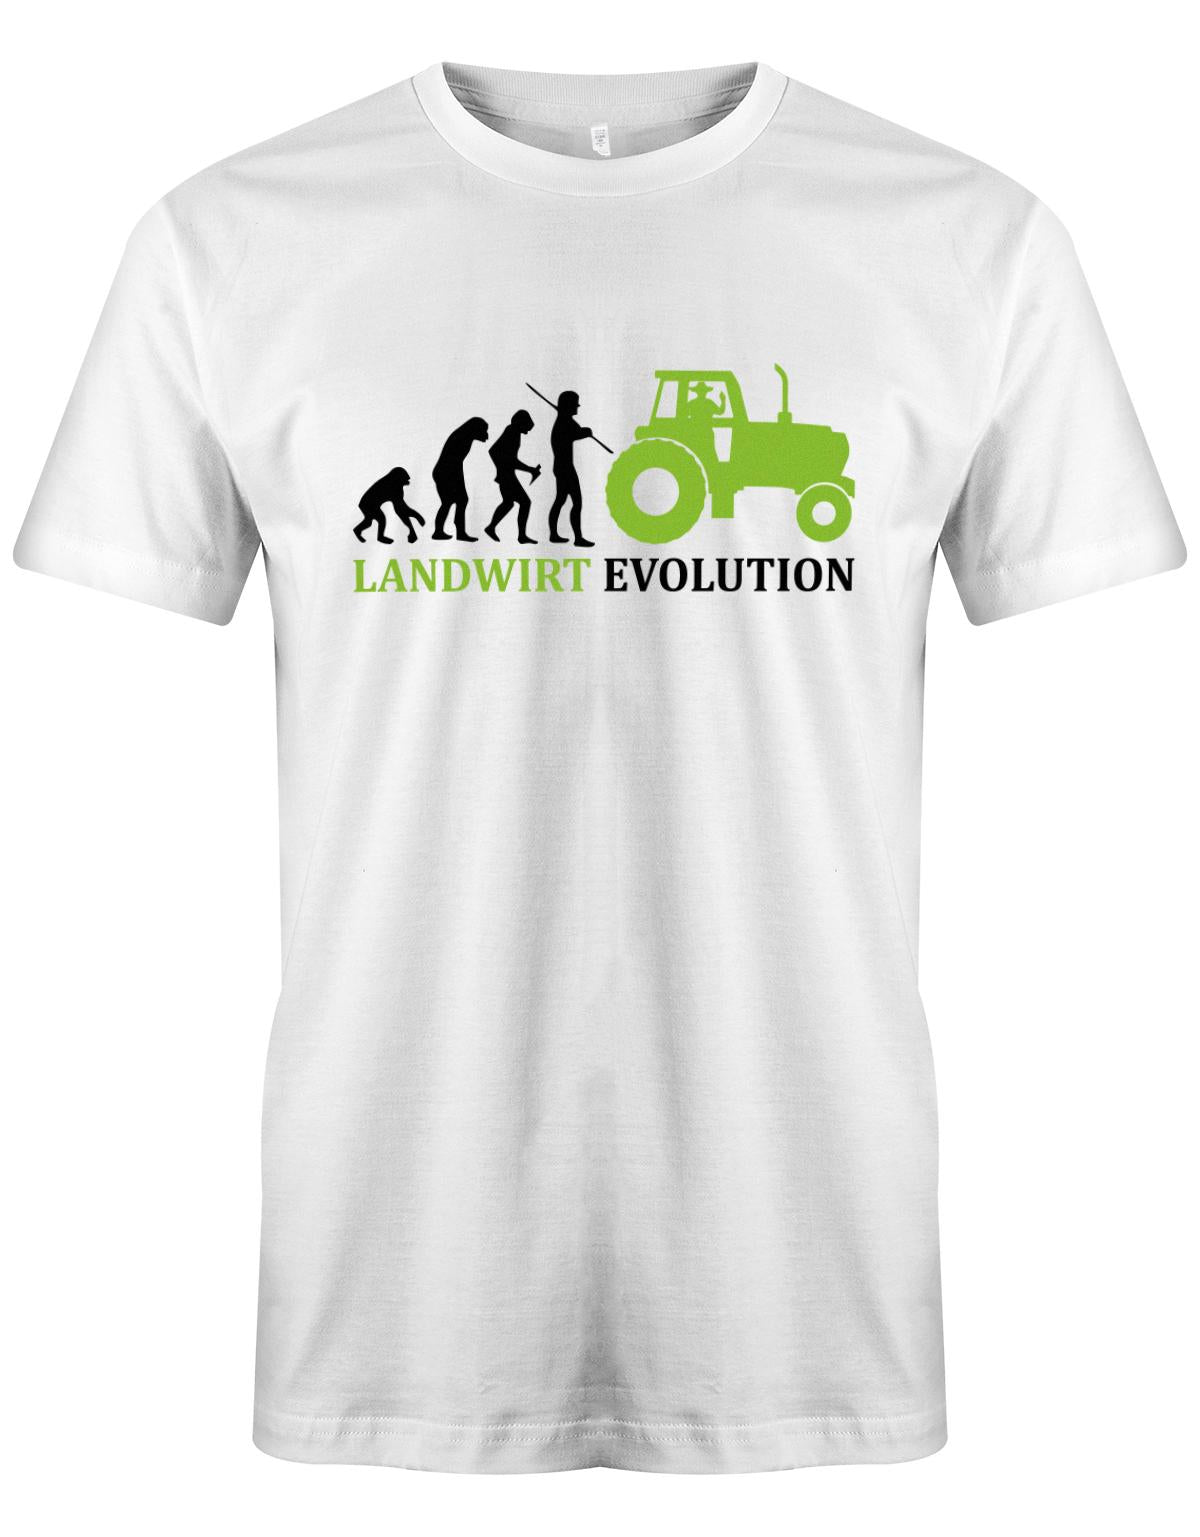 Landwirtschaft Shirt Männer - Landwirt Evolution Weiss